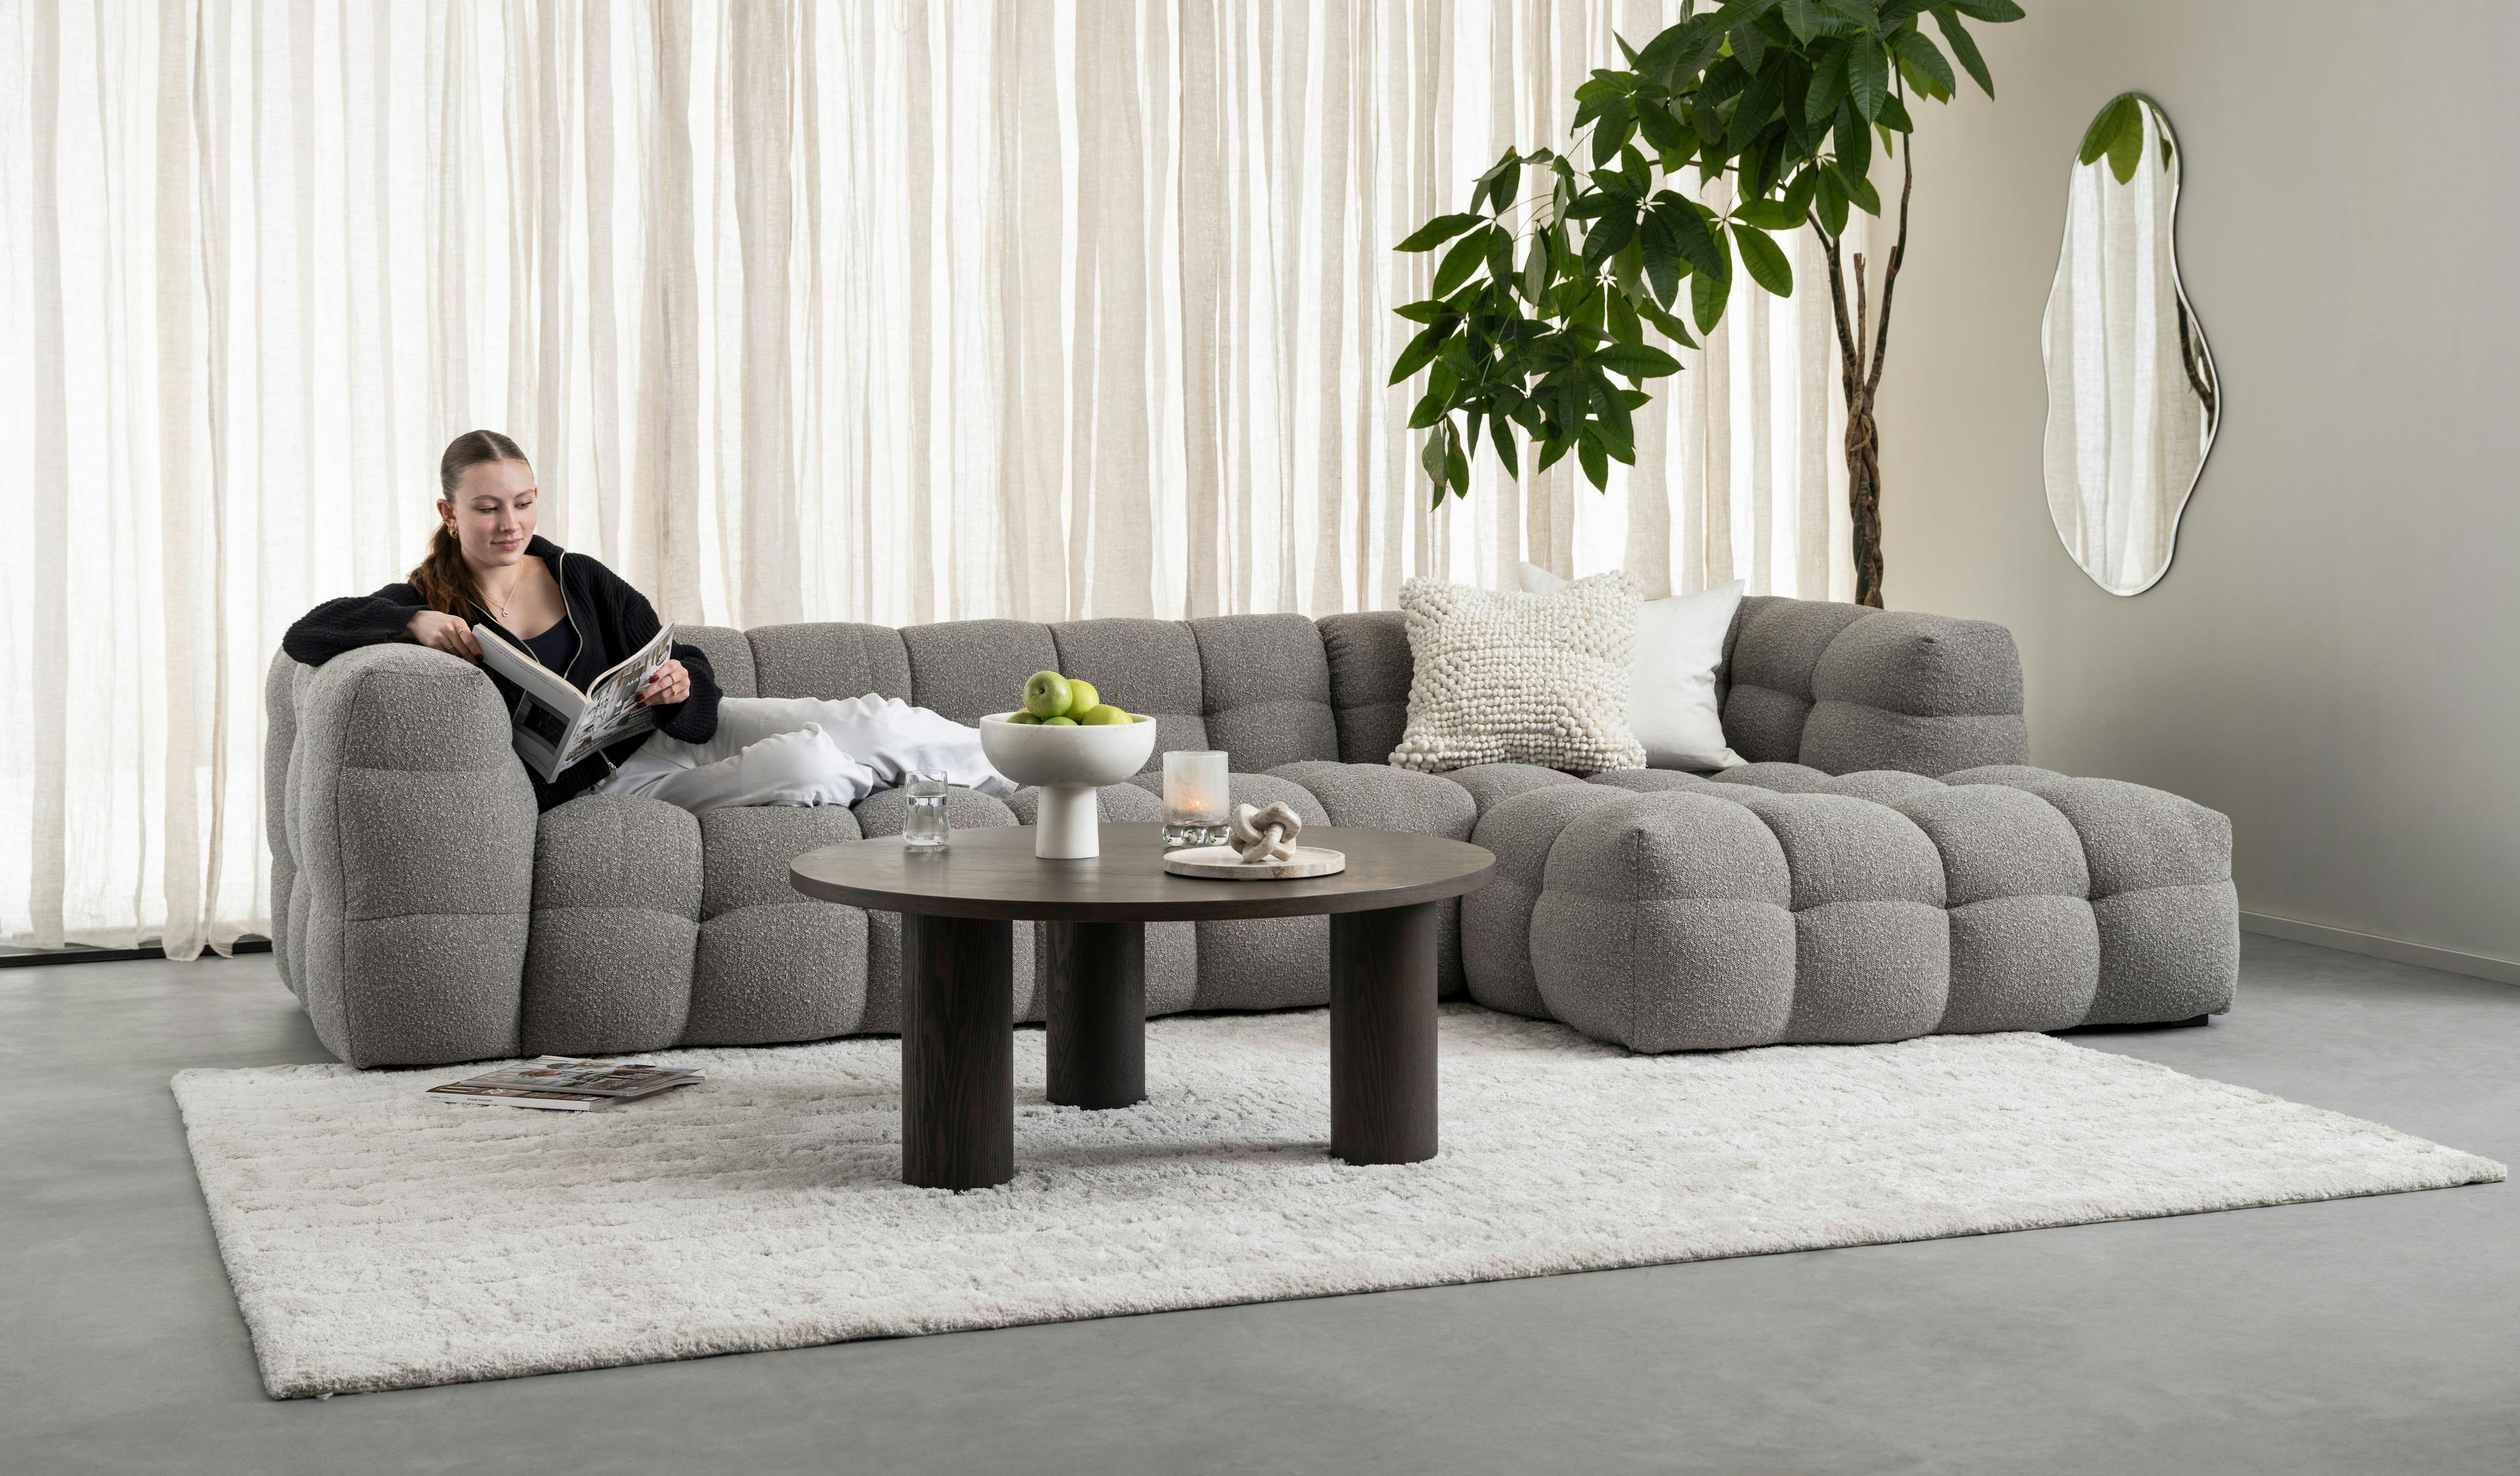 Michelin byggbar sofa